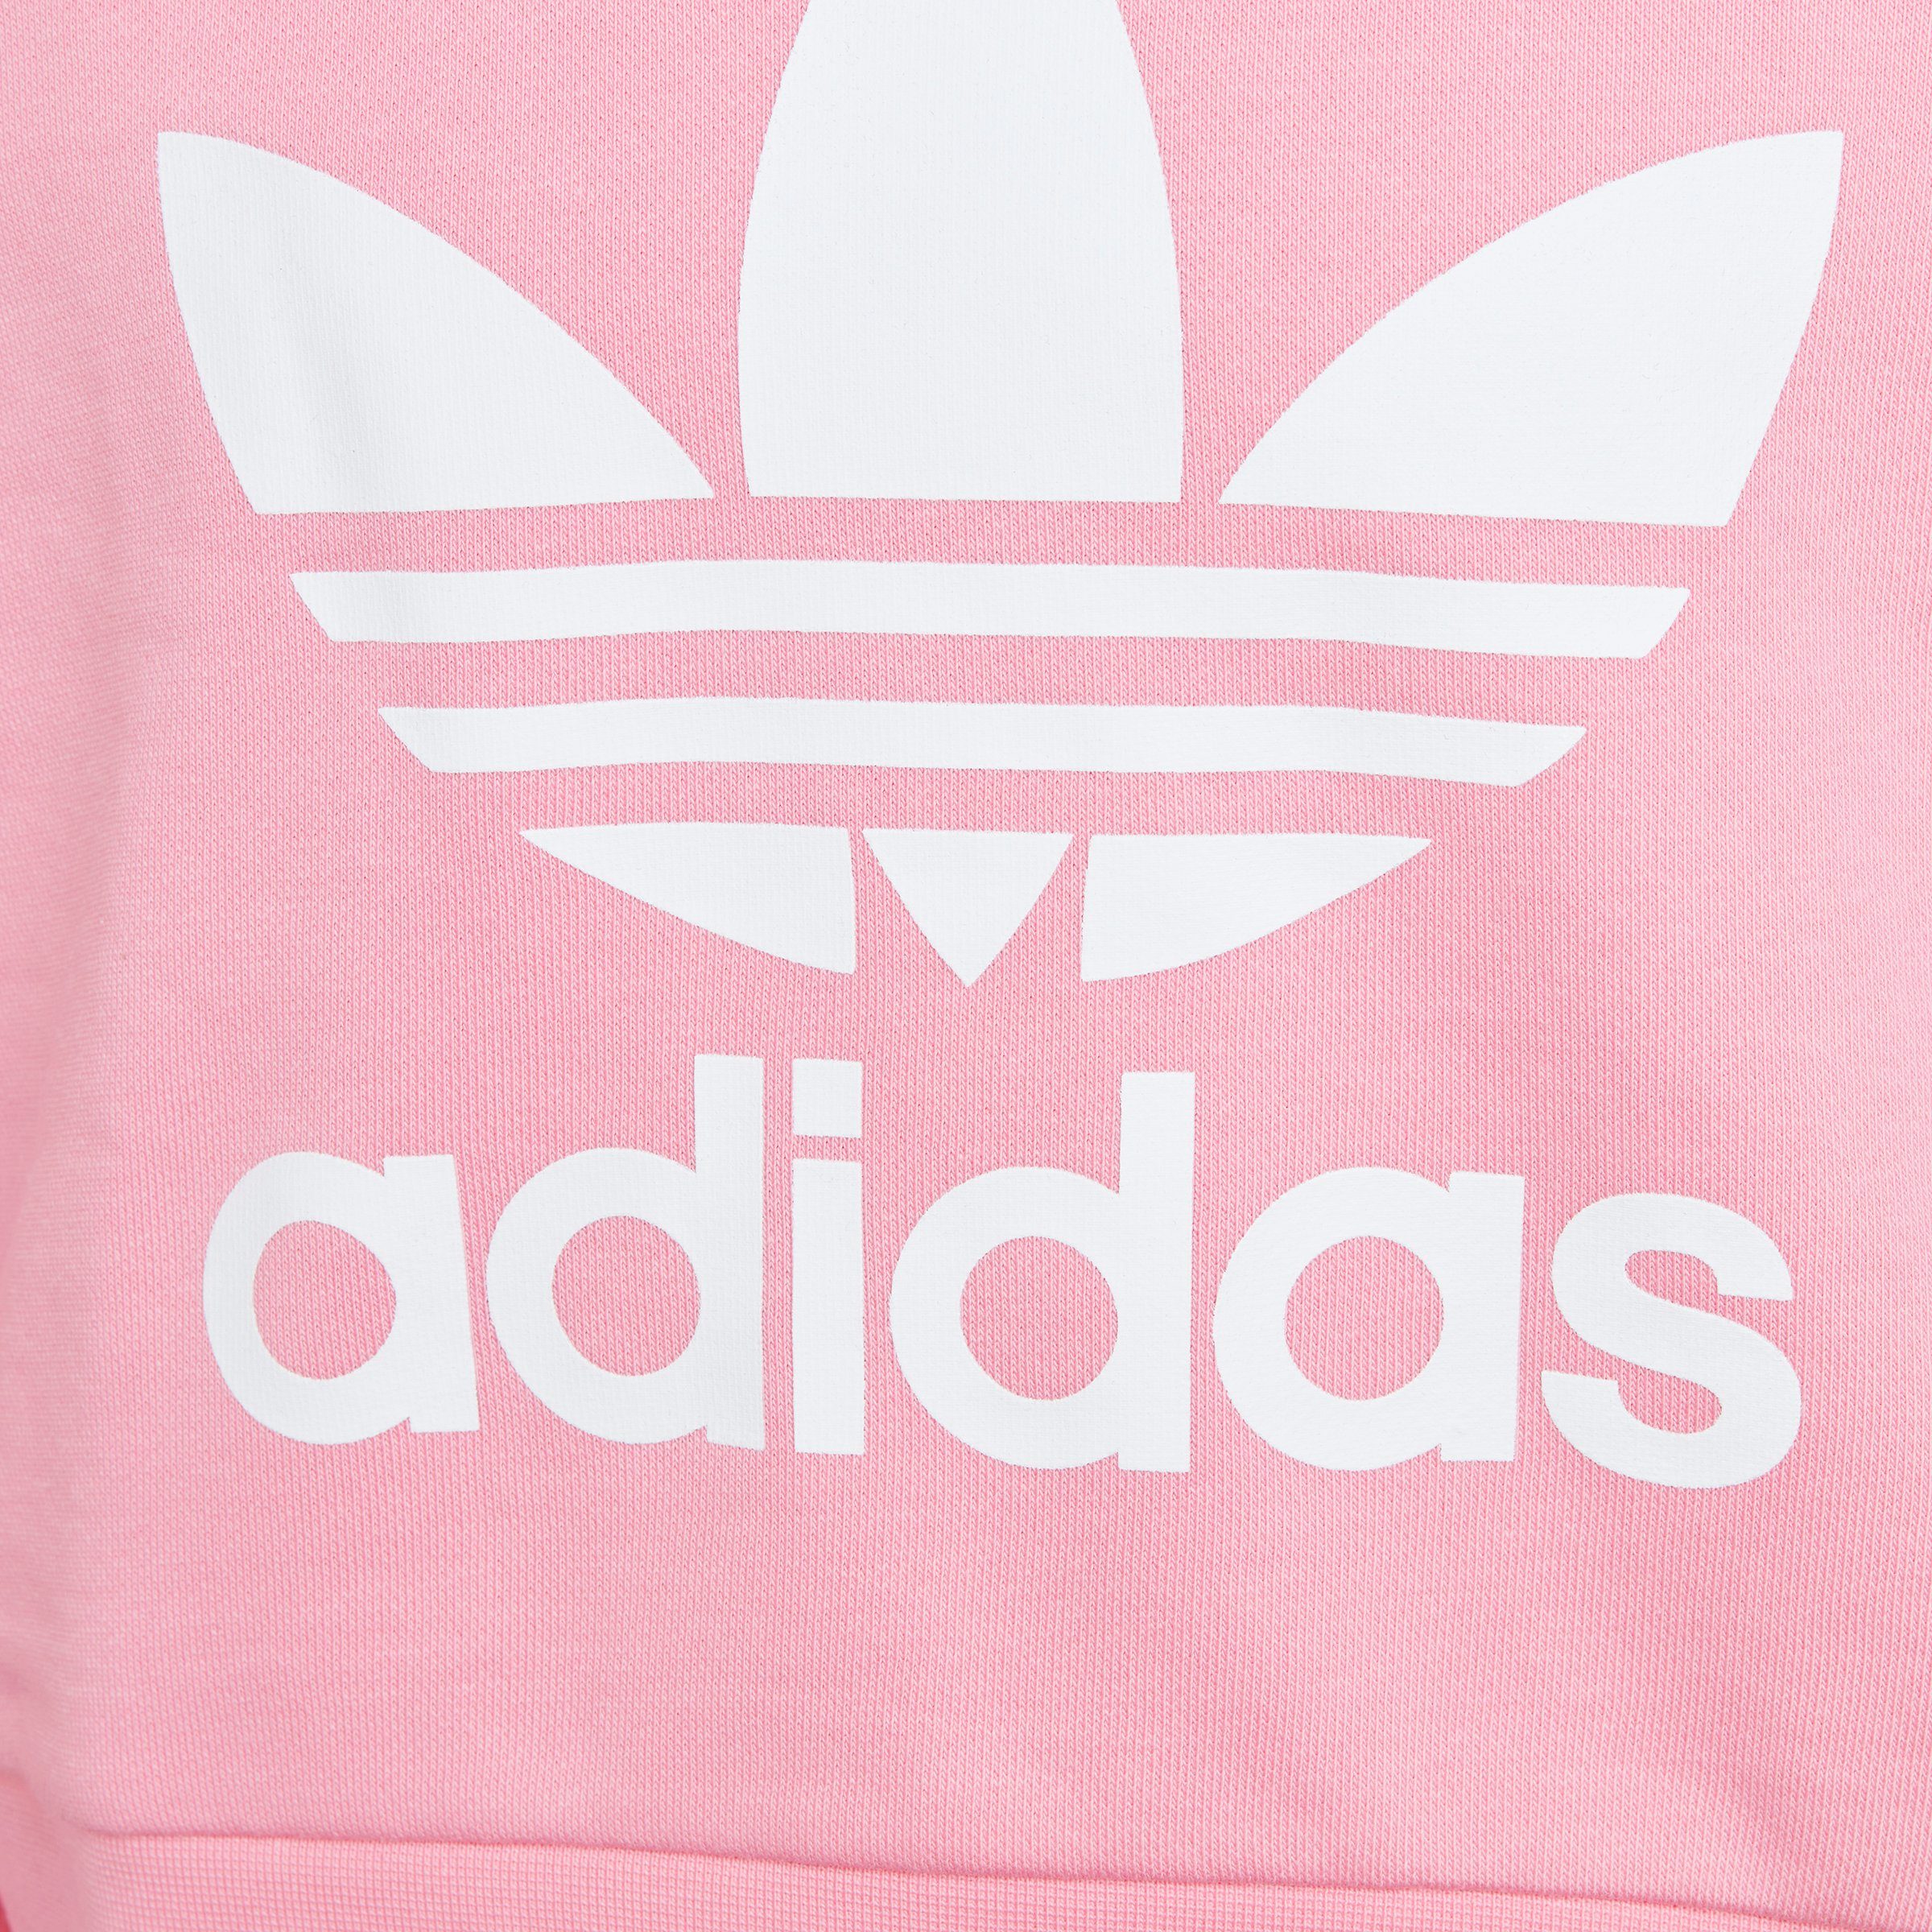 adidas Originals Pink CROPPED HOODIE ADICOLOR Sweatshirt Bliss